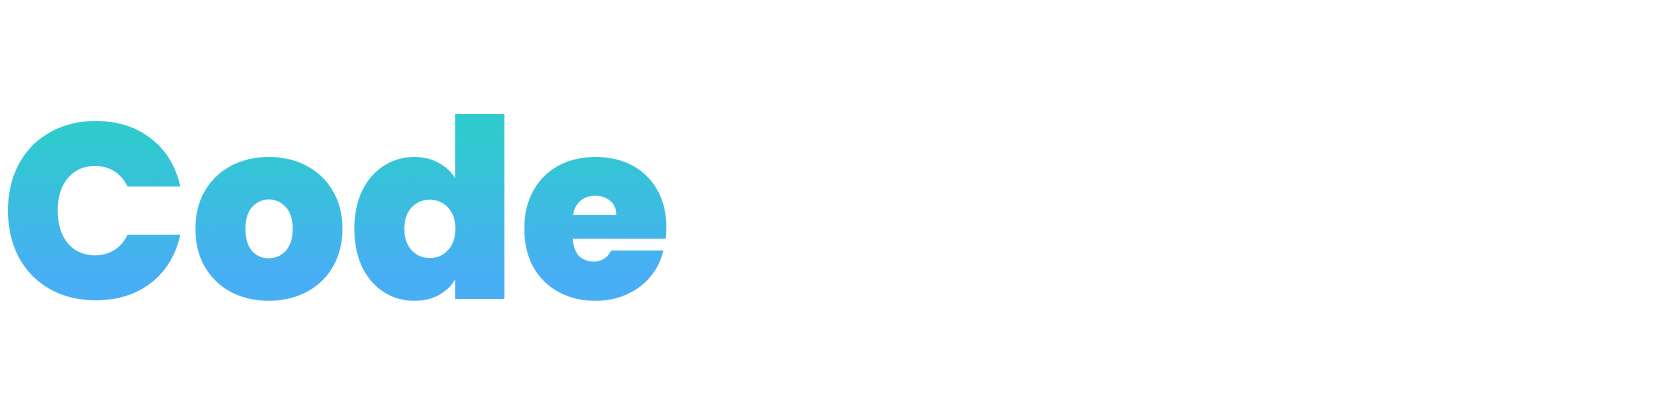 Codemate brand logo